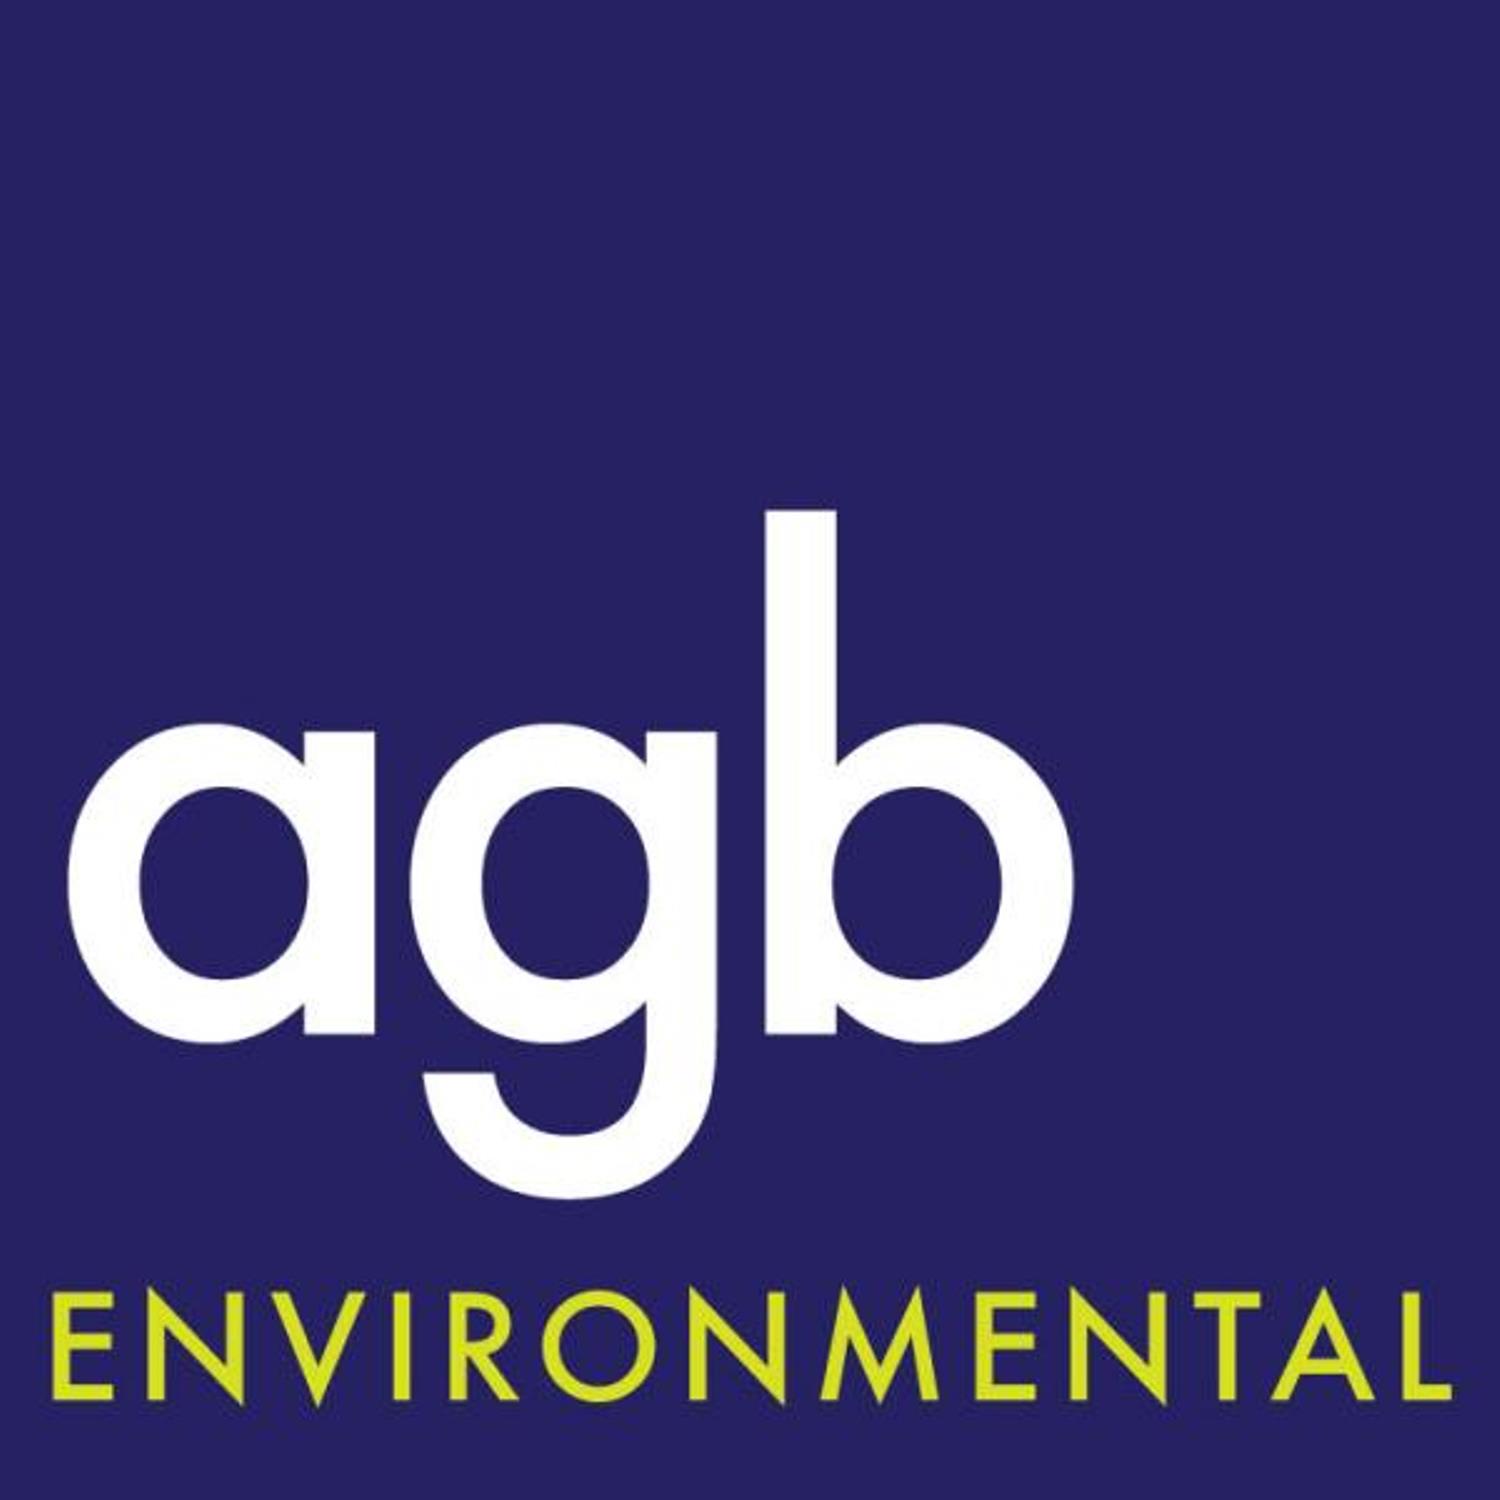 agb Environmental